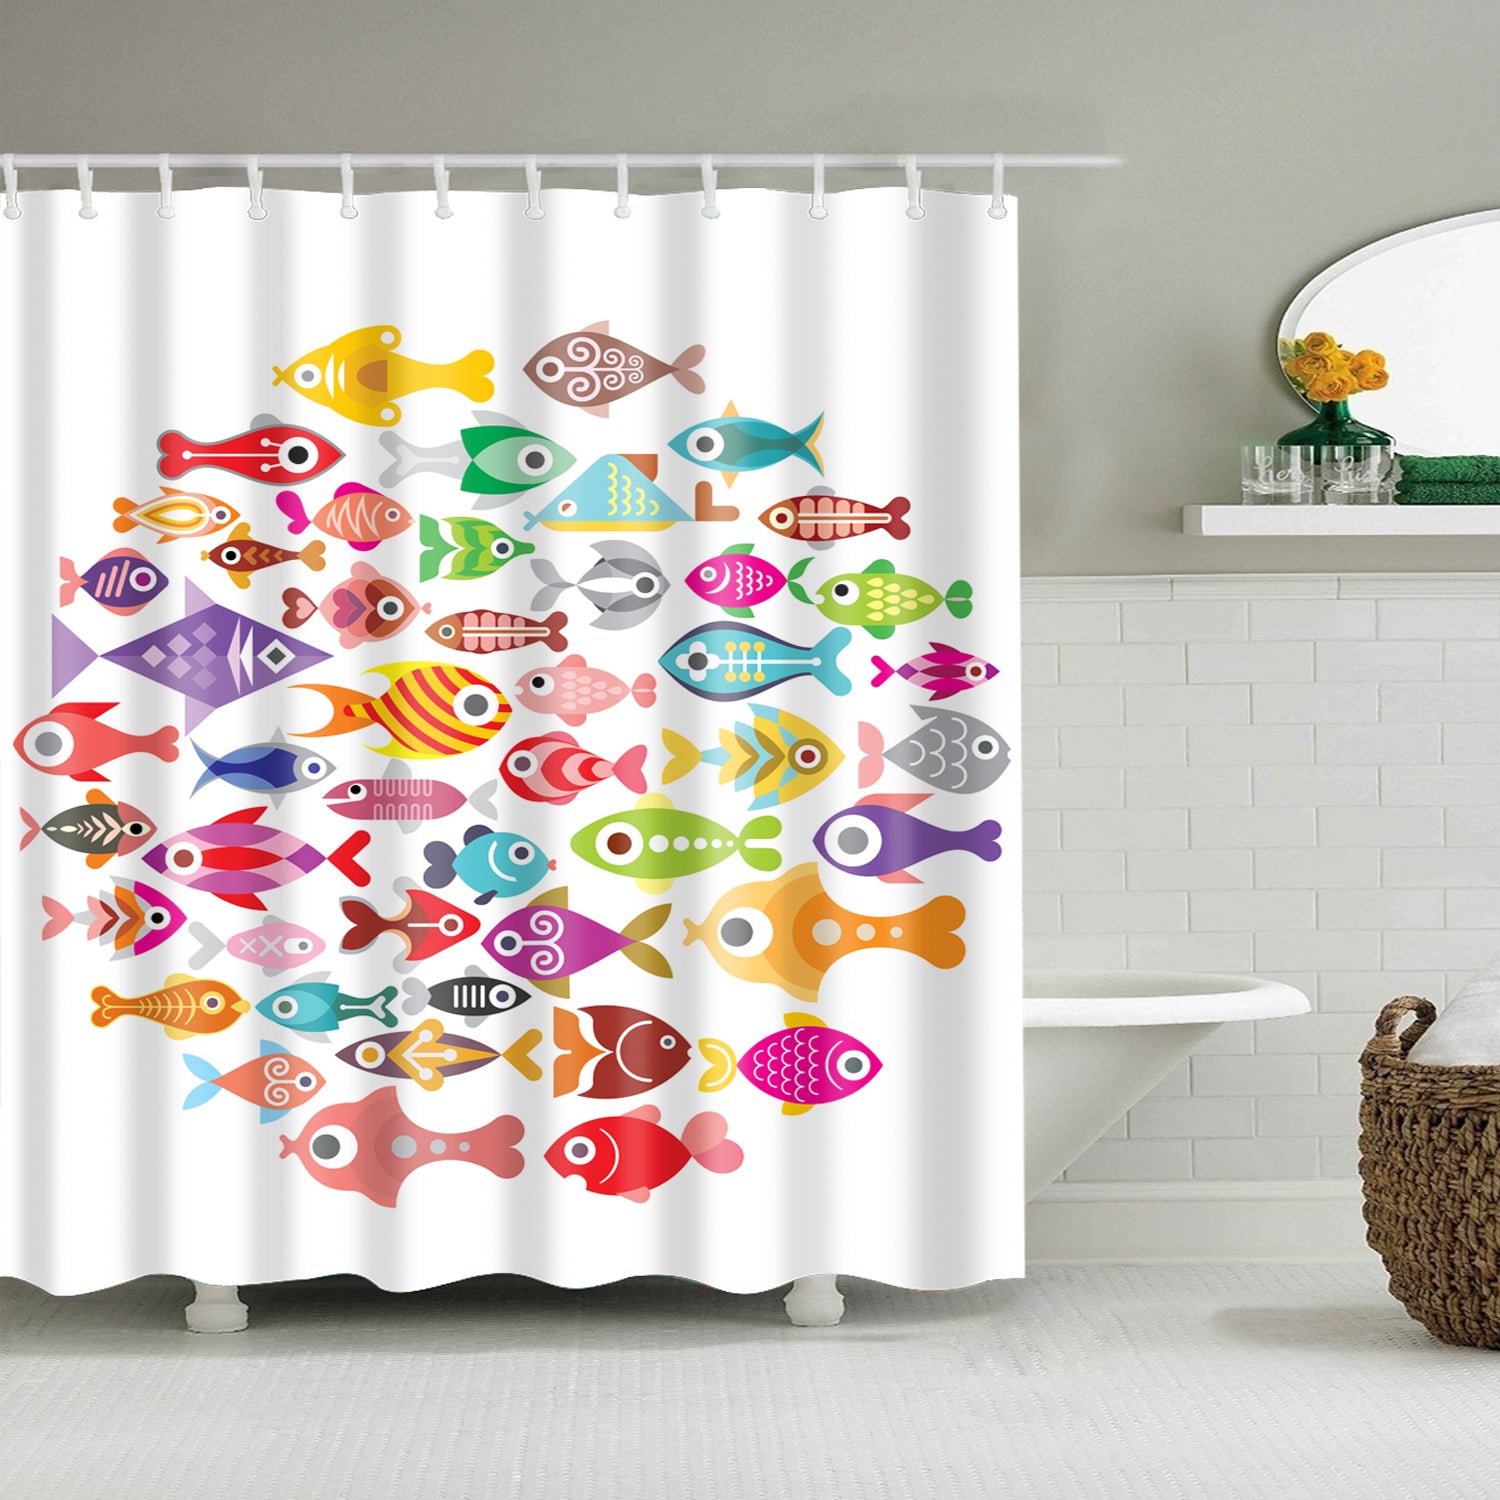 Curtains Cartoon Fish Printed Waterproof  Mildew Proof Bathroom Shower Curtain 